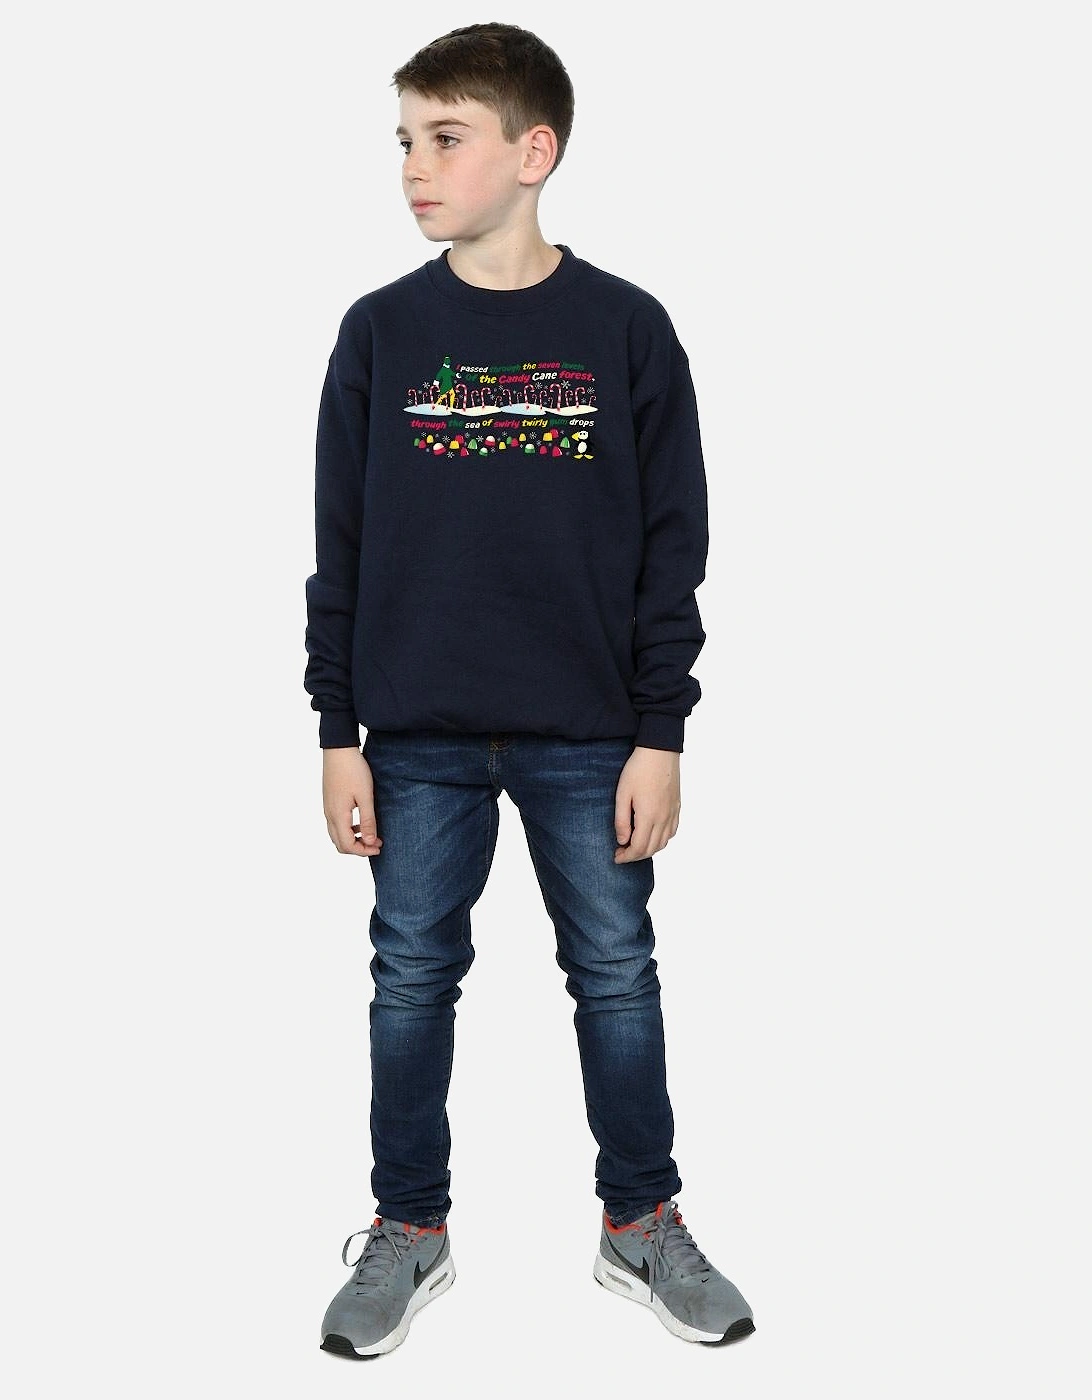 Boys Candy Cane Forest Sweatshirt